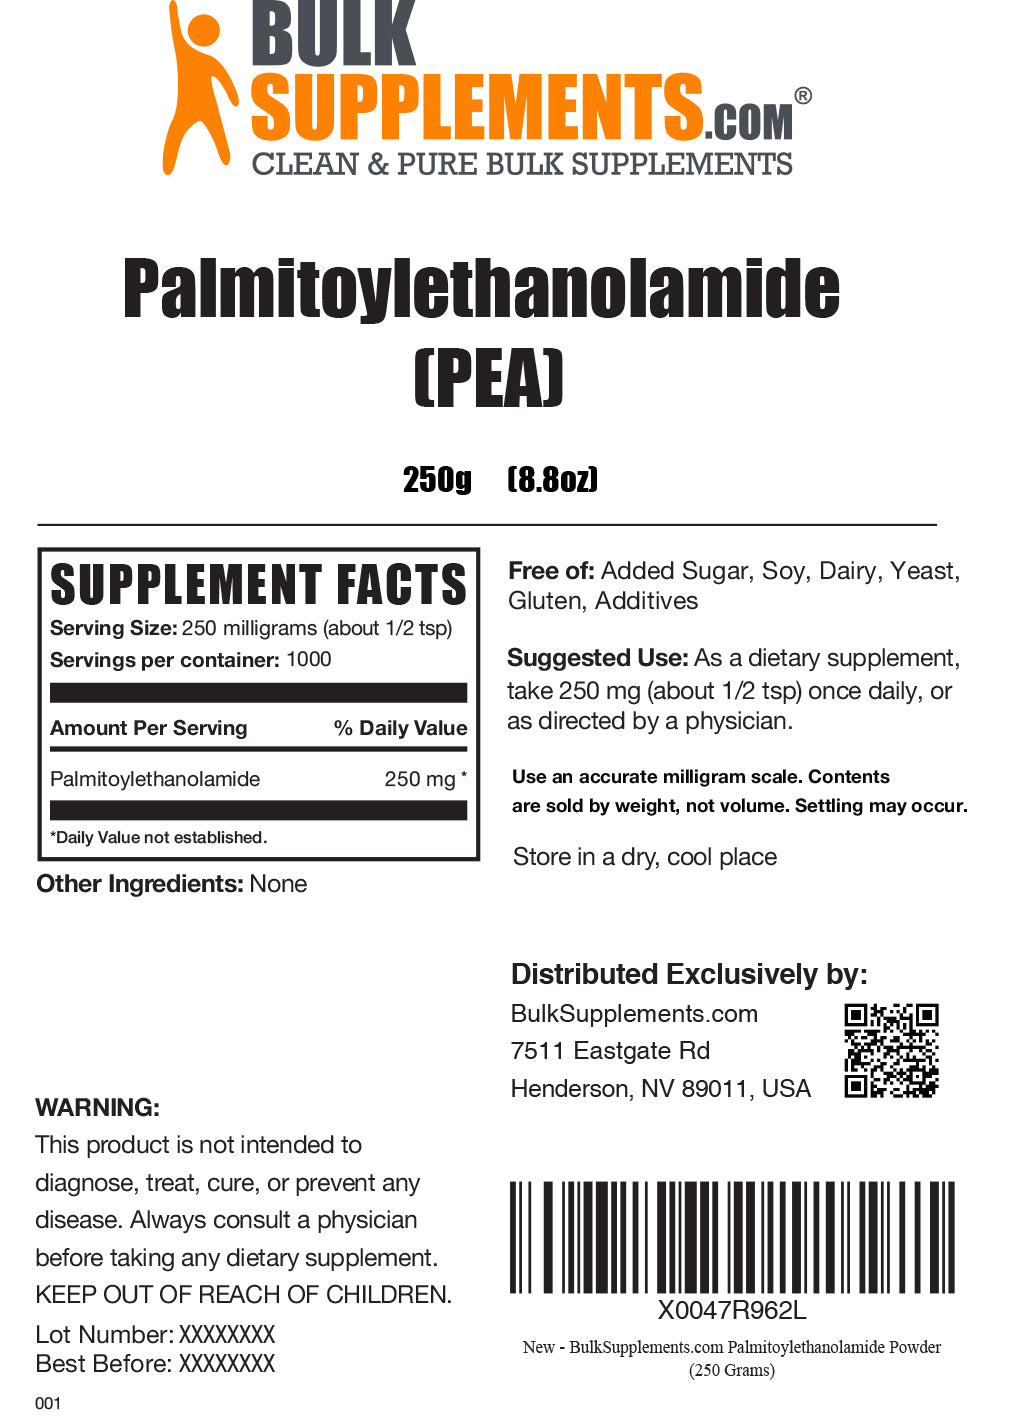 Palmitoylethanolamide (PEA) Powder 250g